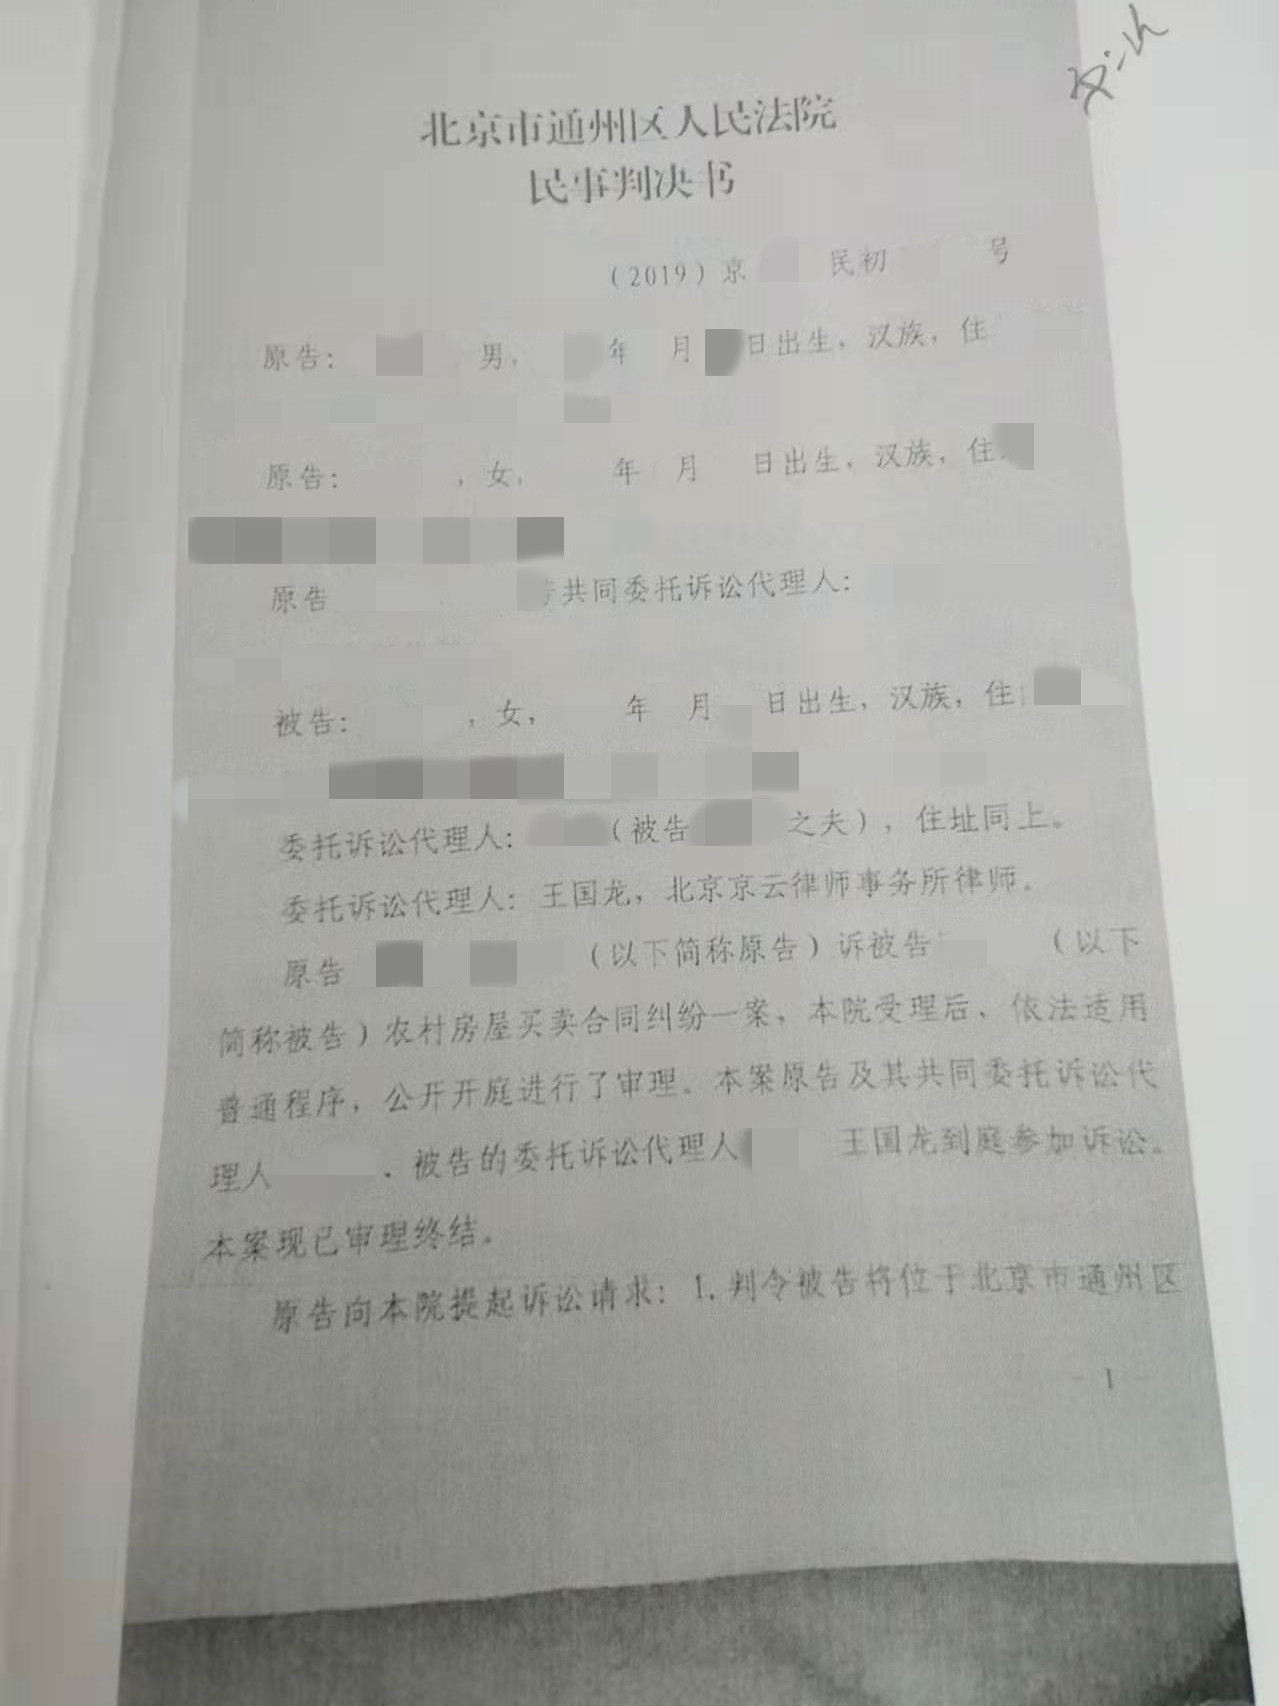 外地人购买北京农村私有房屋后遇困，京云律师助其维权